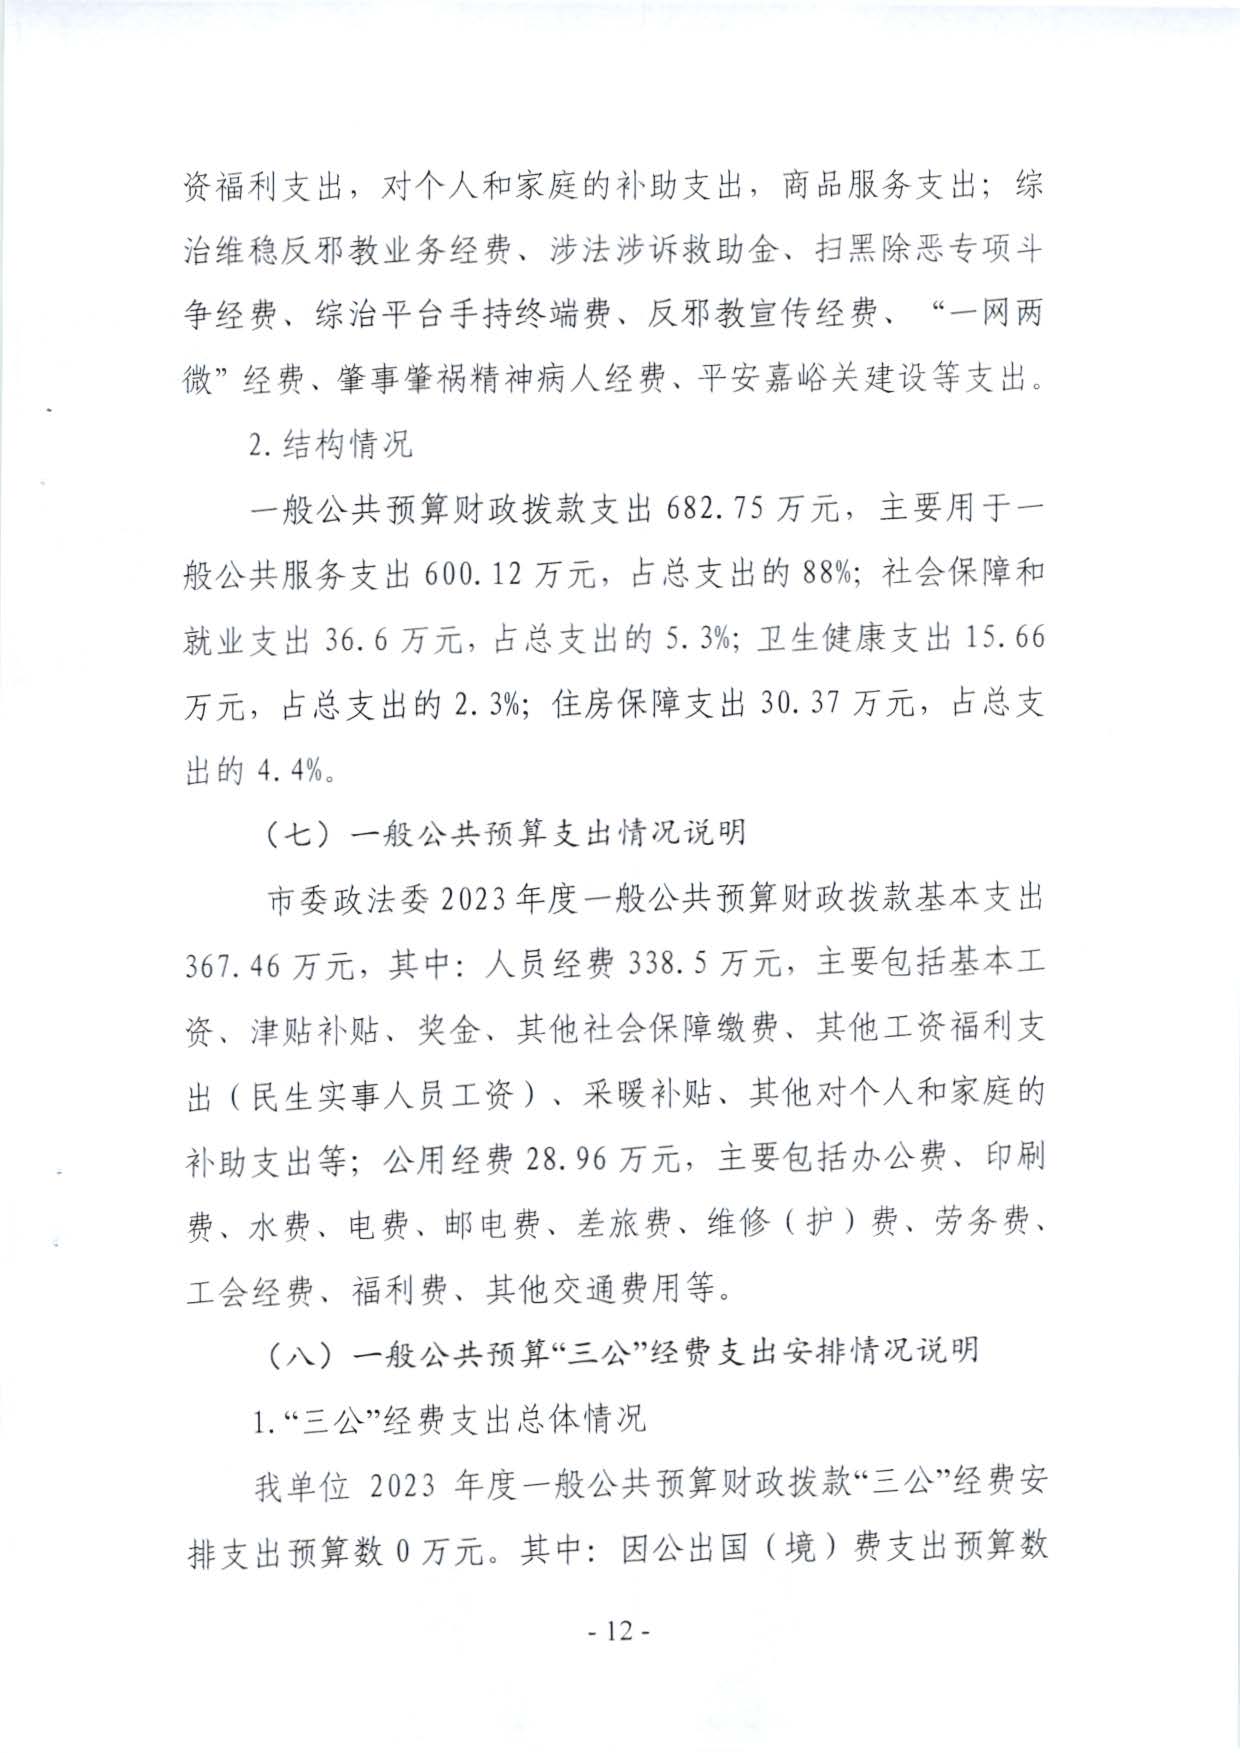 嘉峪关市委政法委2023年预算公开情况说明(1)_页面_12